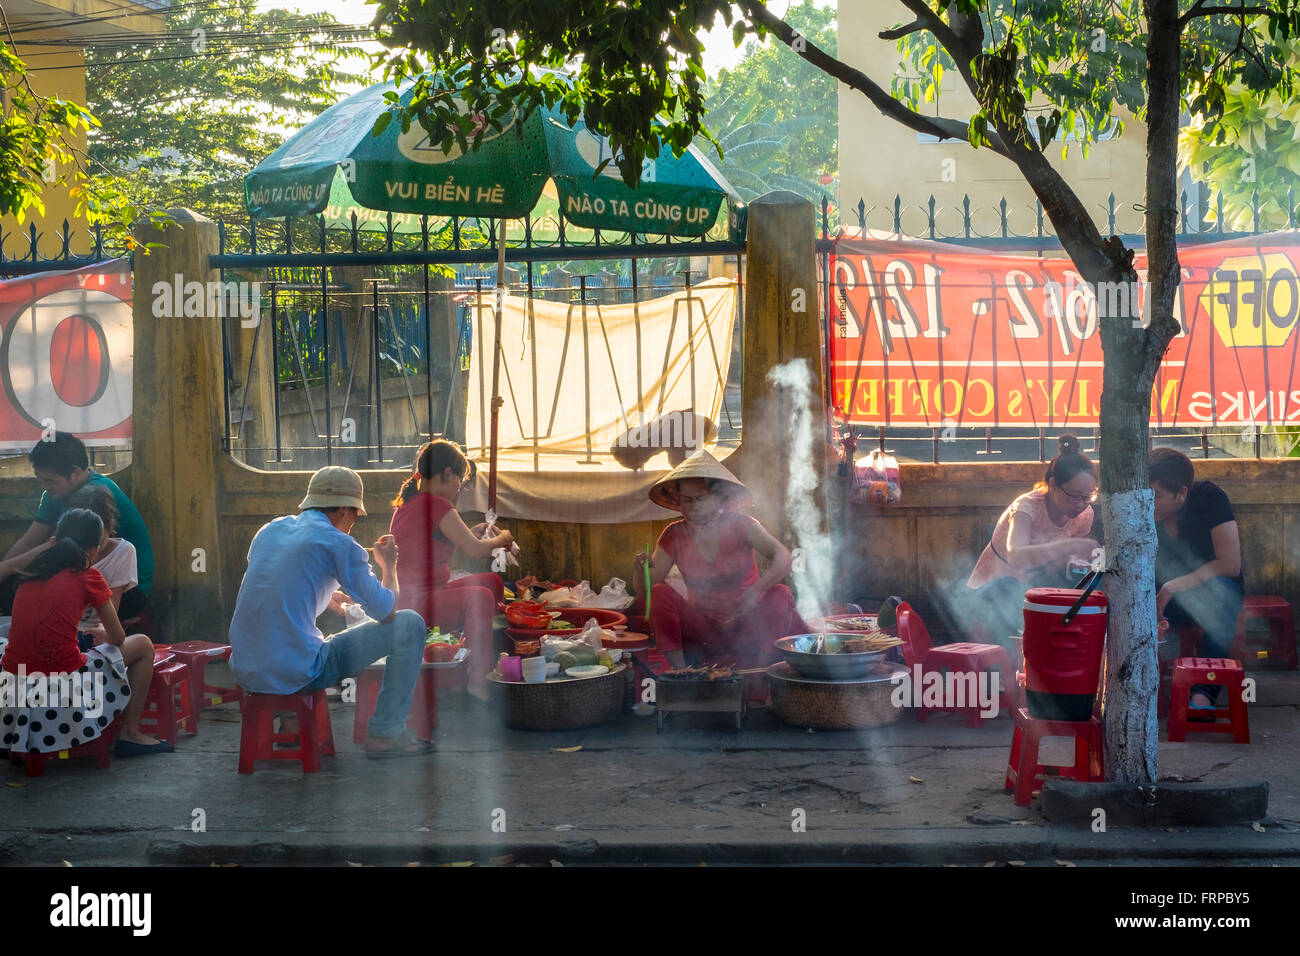 Les gens de manger au street food sur le trottoir à Hoi An, Vietnam Banque D'Images